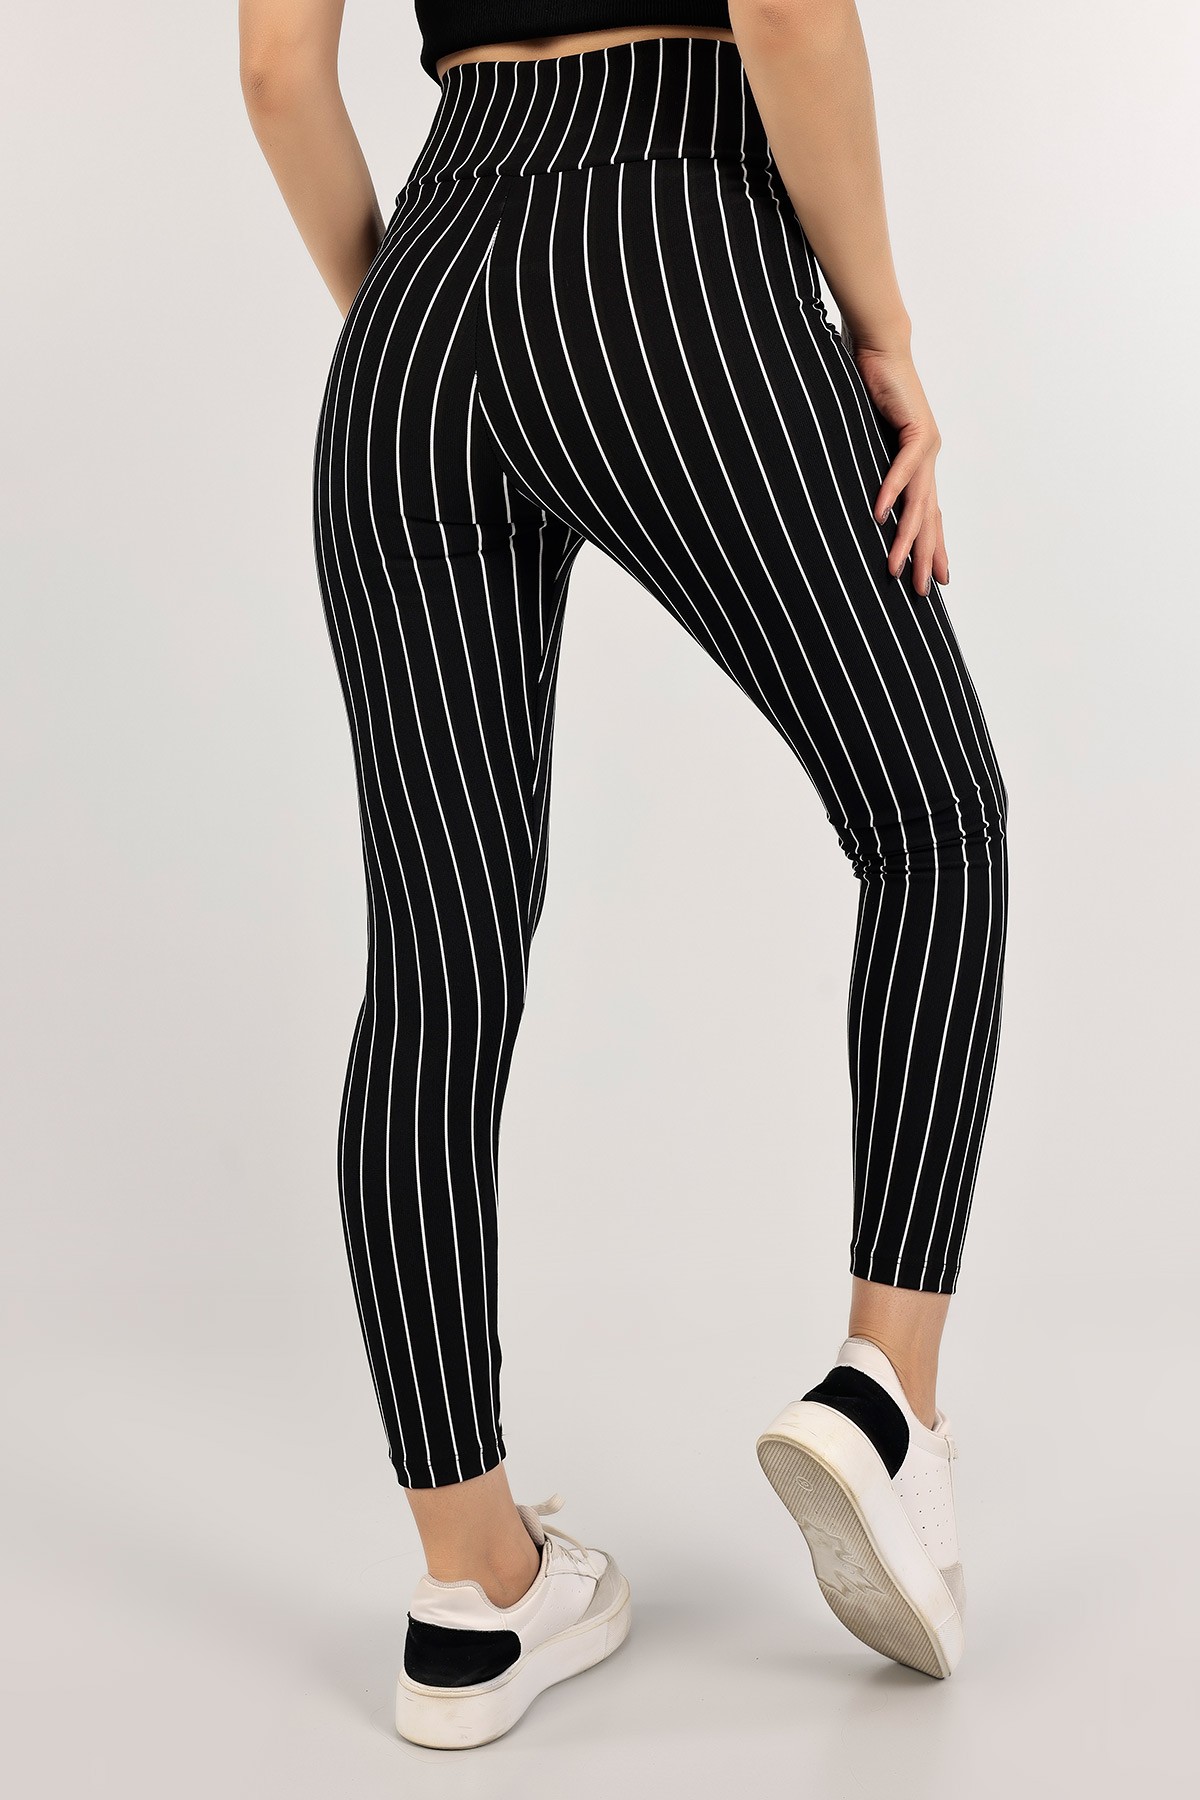 Black striped pants